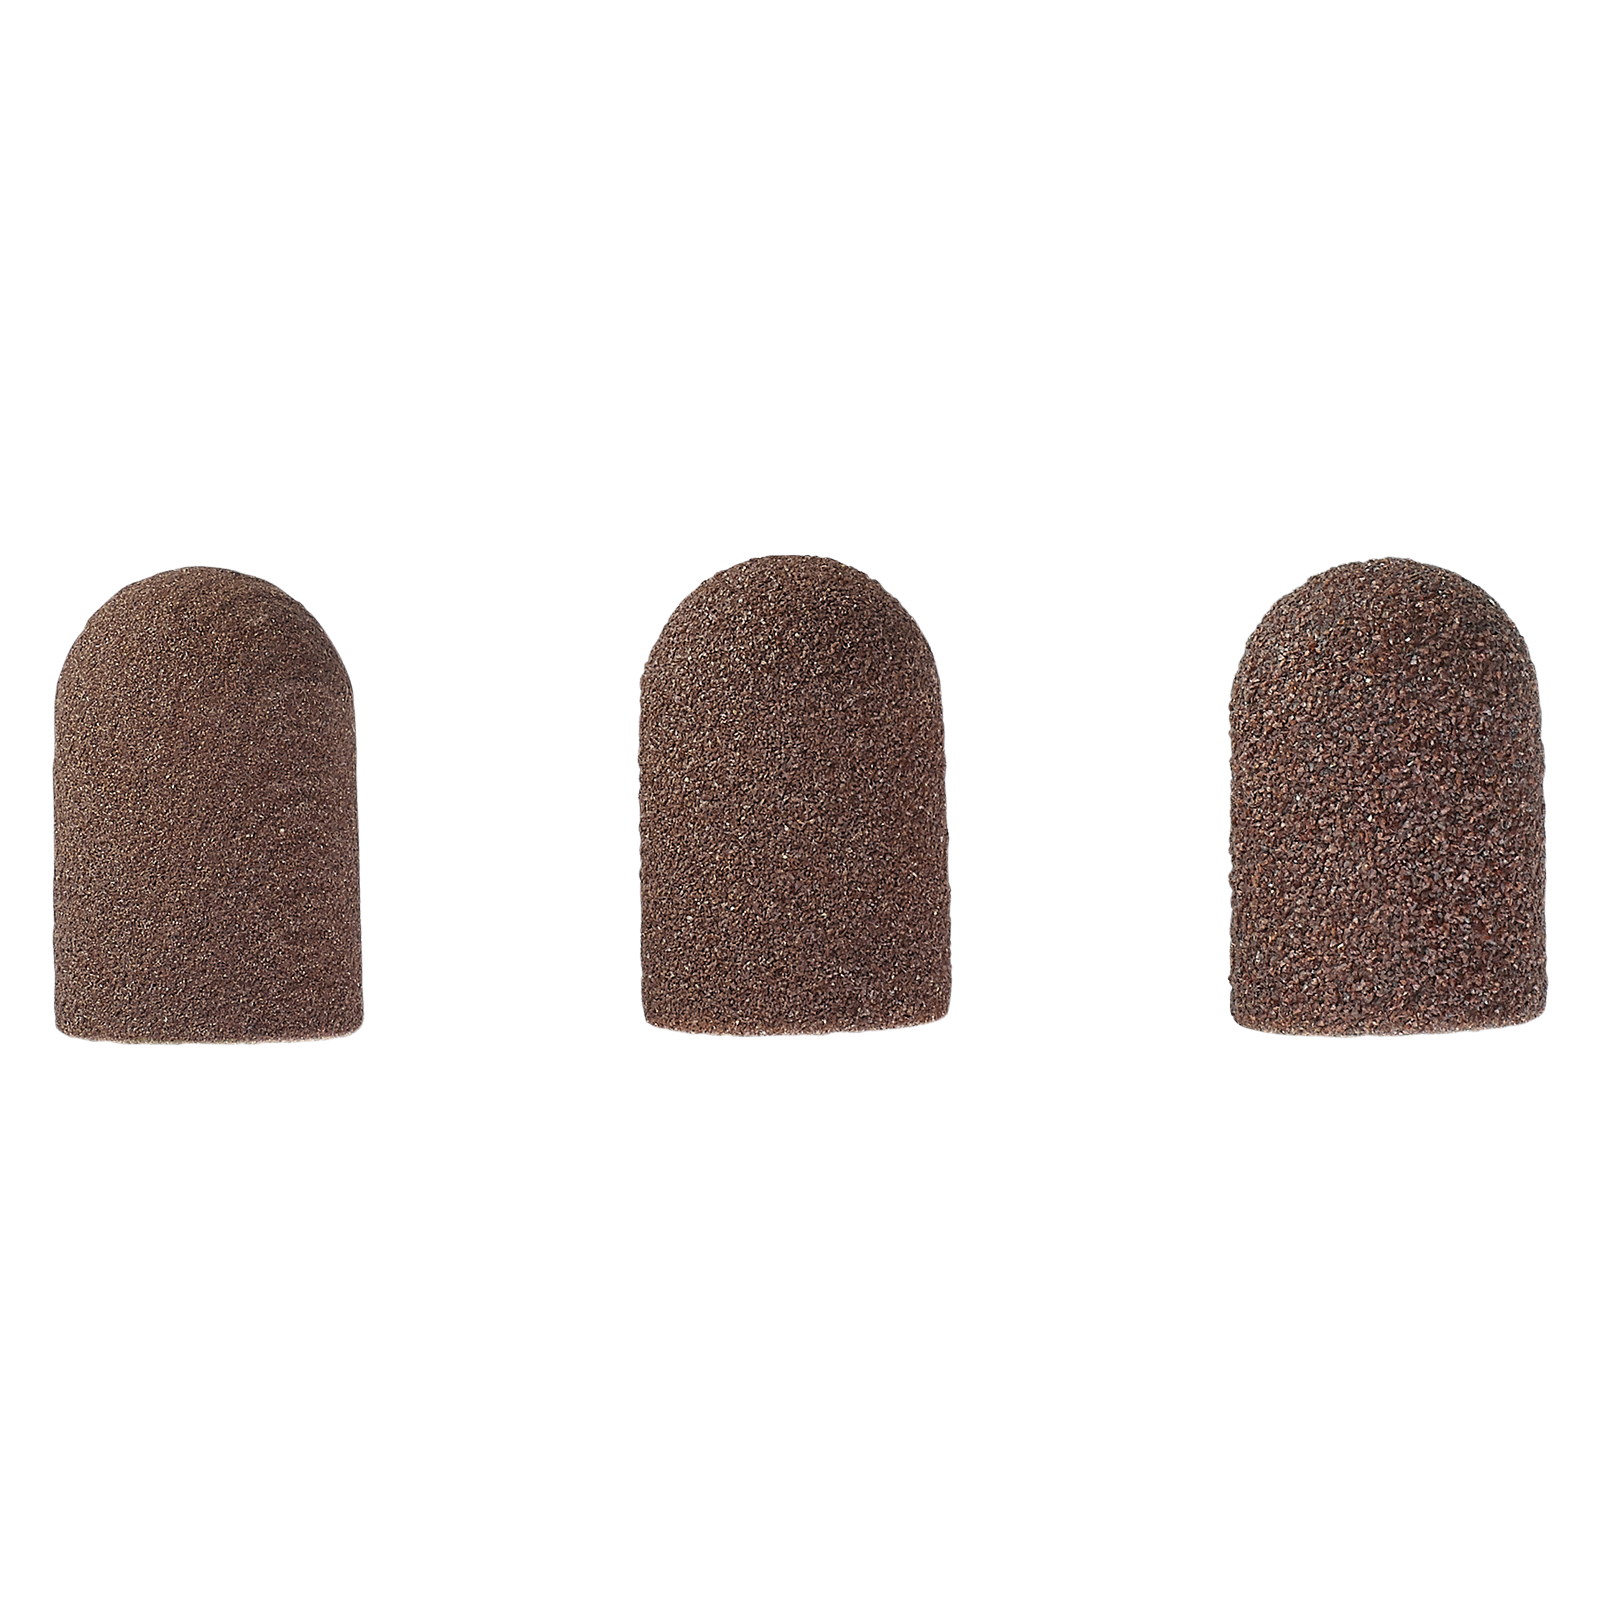 Kappenschleifer ▻ Schleifkappe rund Ø 16 mm fein, braun